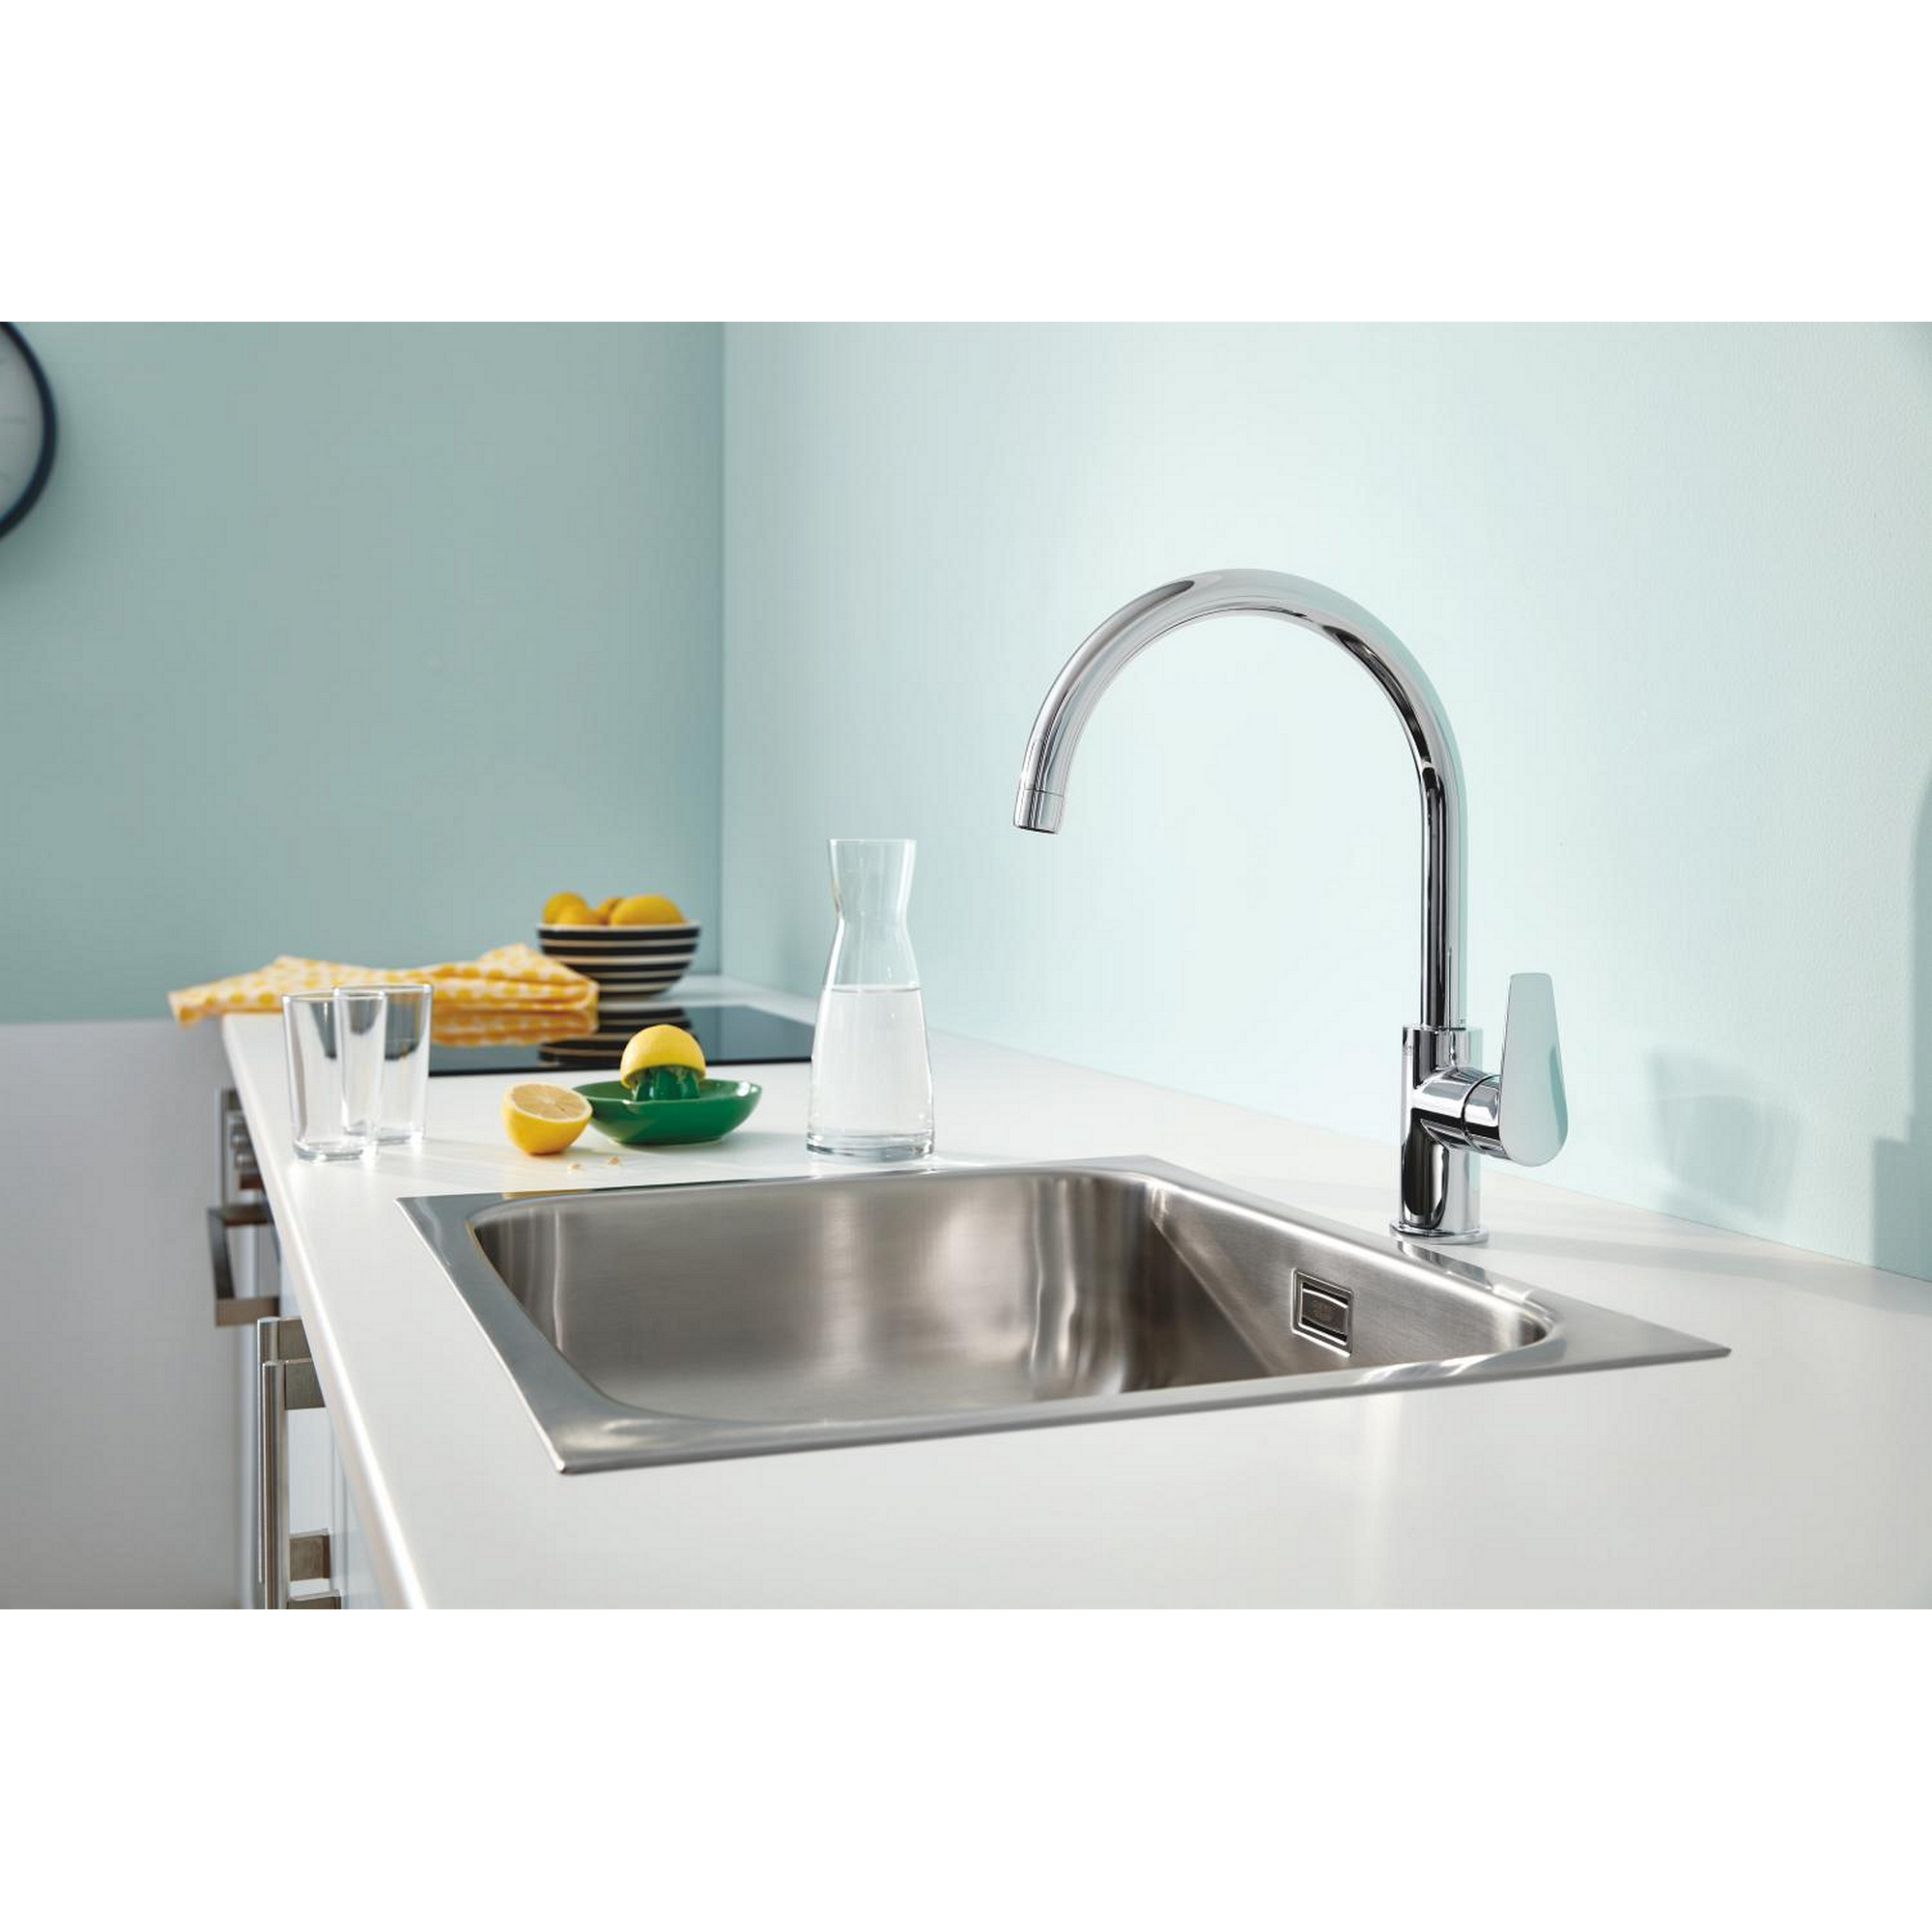 Einhebel-Küchenarmatur 'Start Edge' chromfarben 255 x 480 mm + product picture